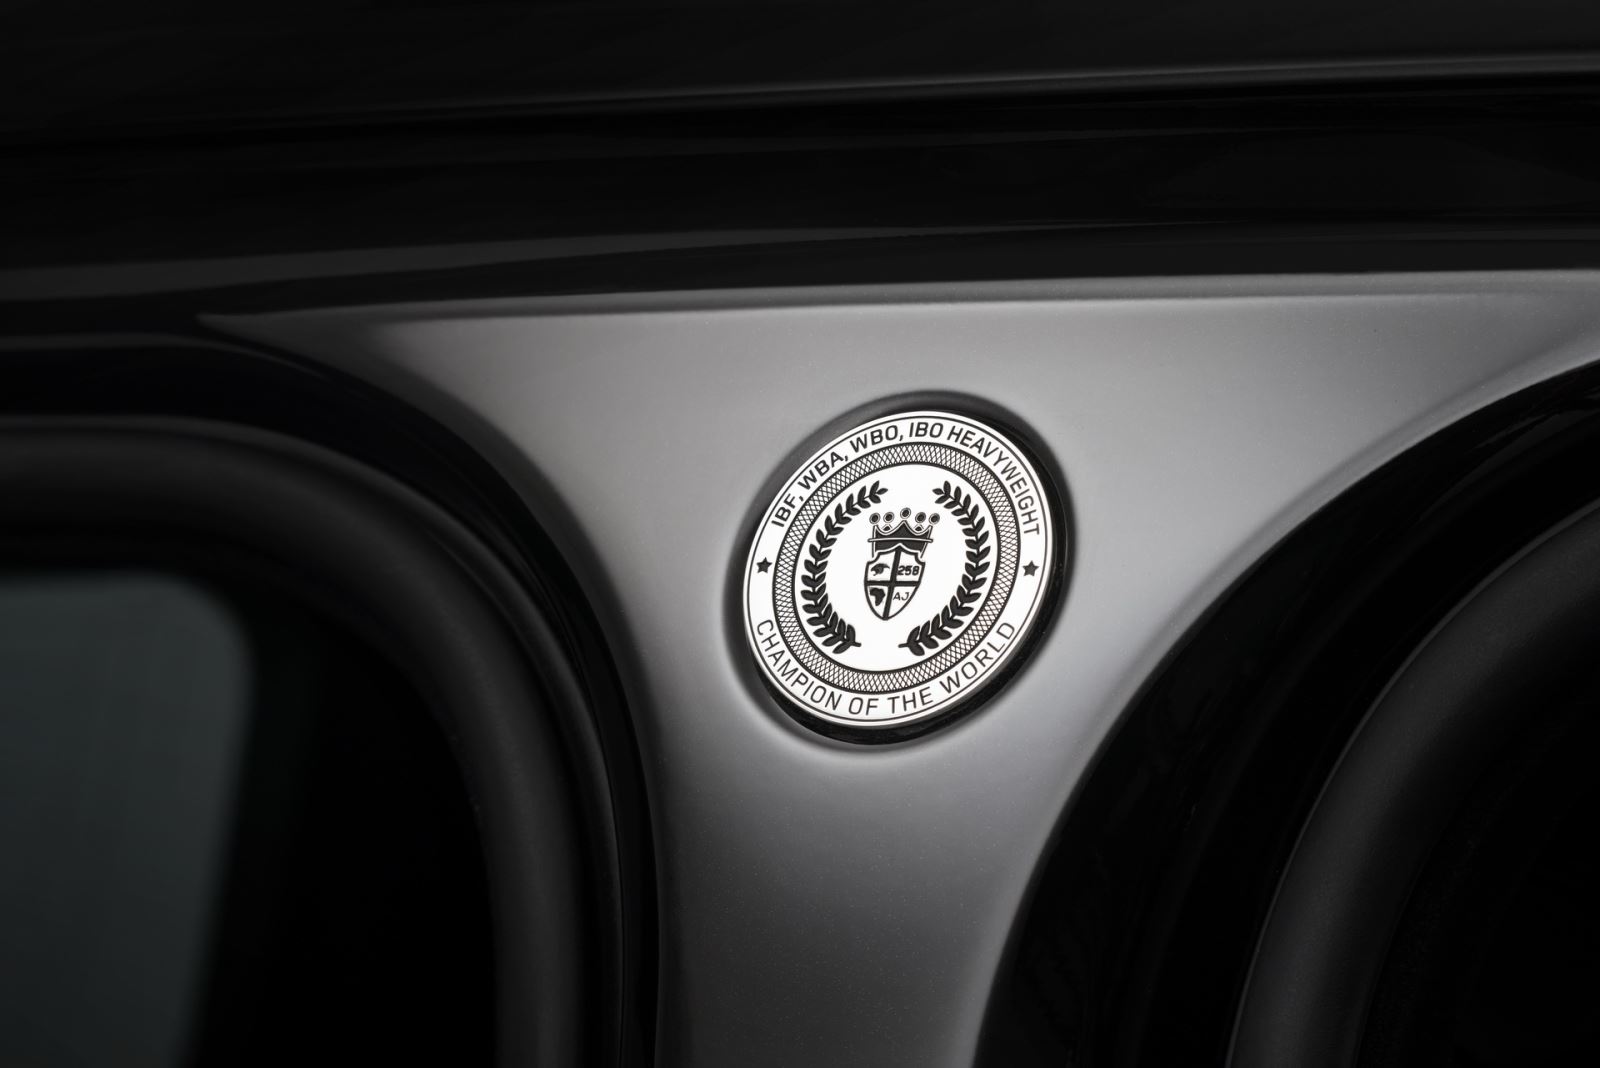 Range Rover SVAutobiography độc nhất vô nhị cho vua quyền anh: Bên ngoài hầm hố nhưng bên trong mới nhiều điểm đặc biệt 2